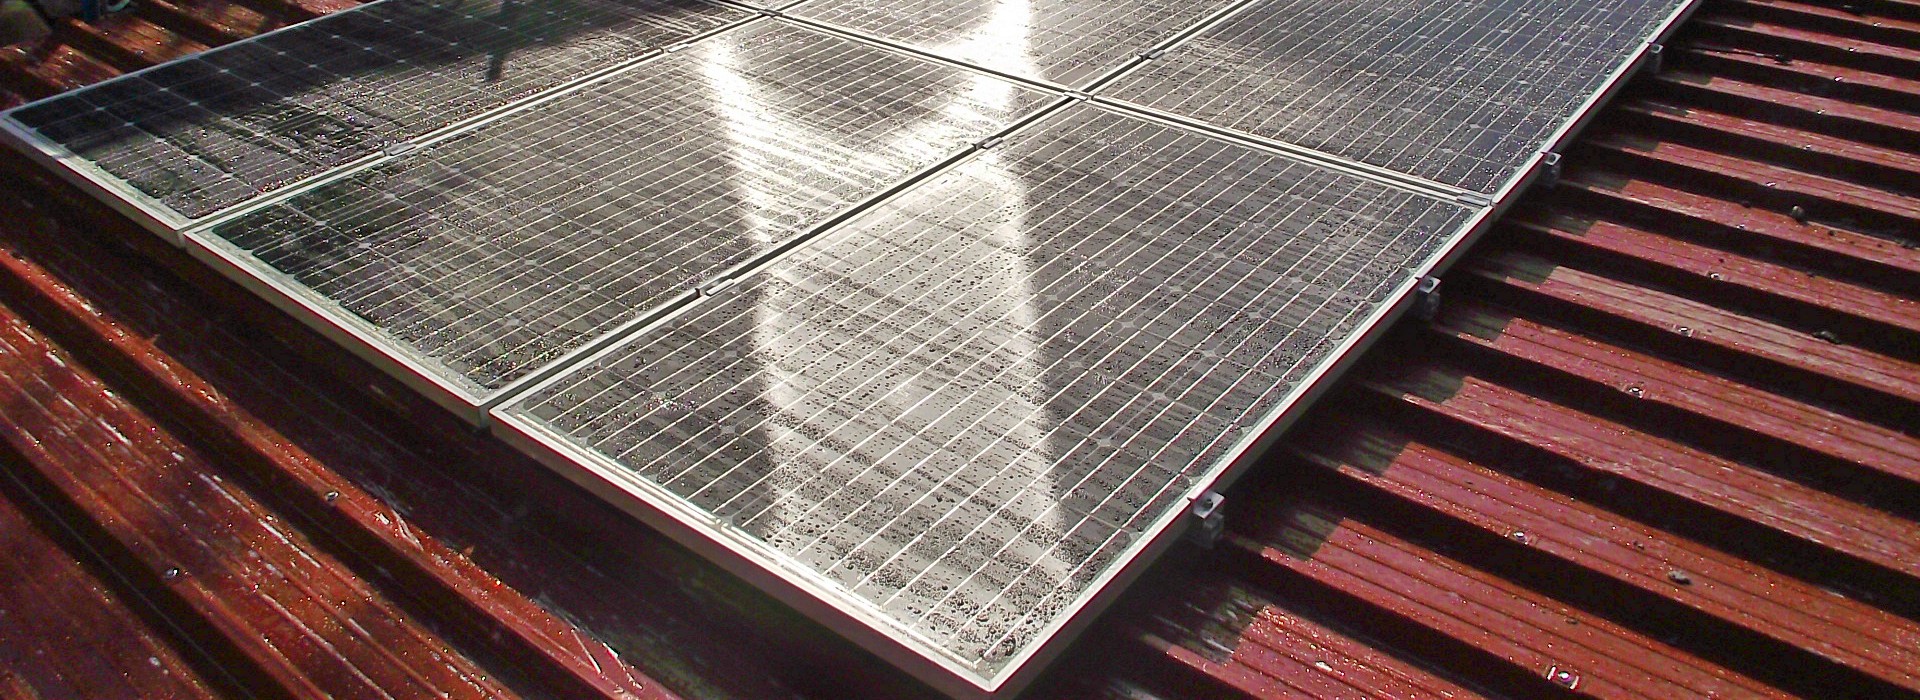 Pannelli fotovoltaici su tetto di capannone